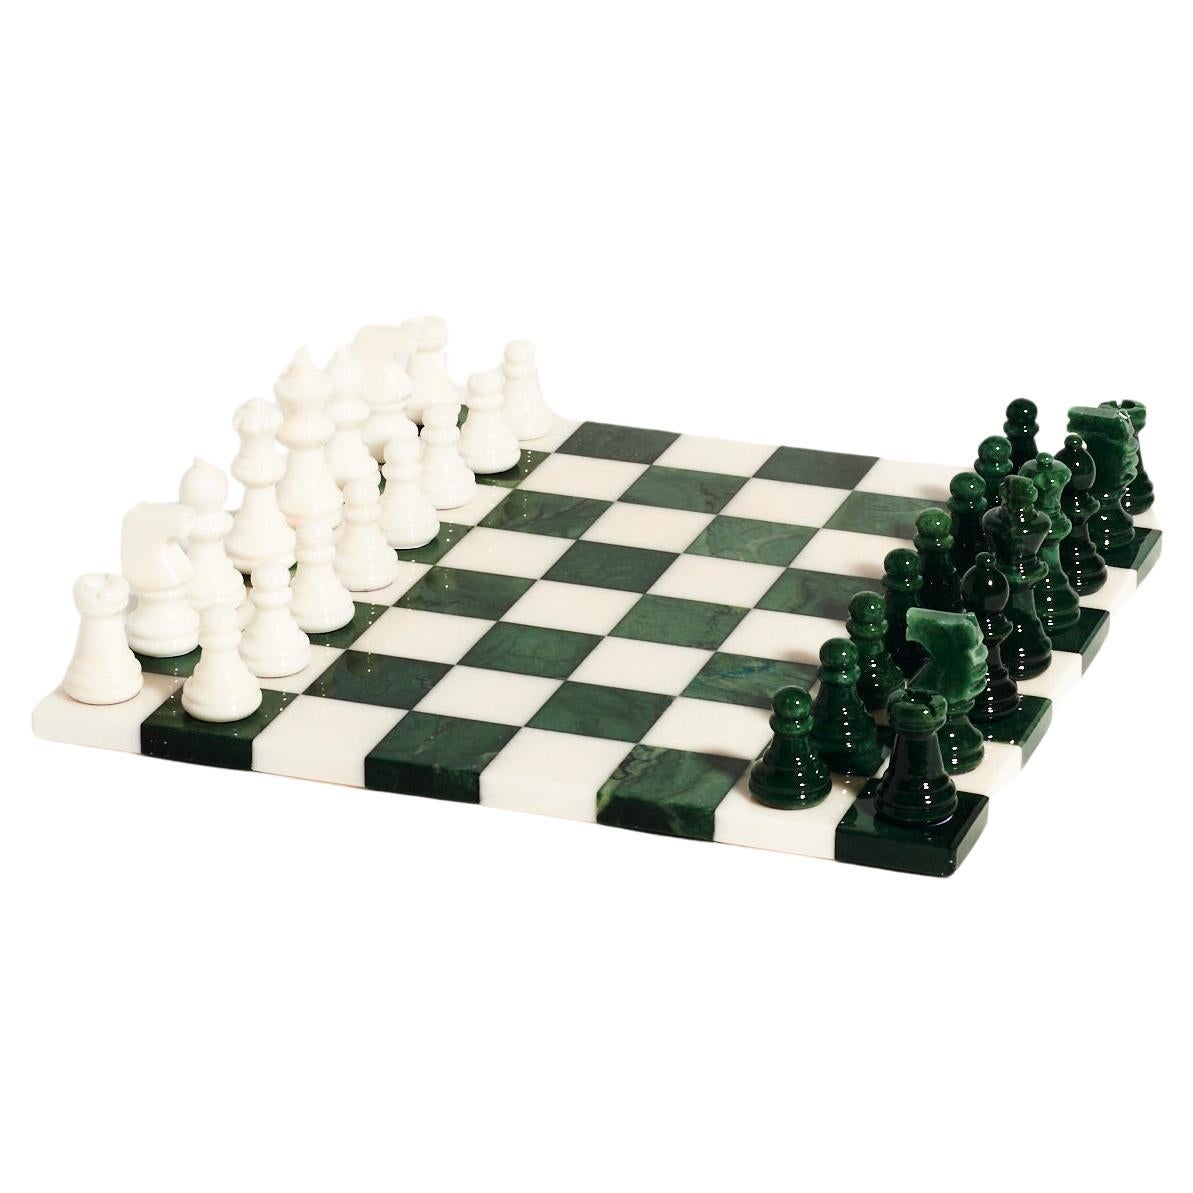 Grand jeu d'échecs italien en albâtre, vert forêt/blanc